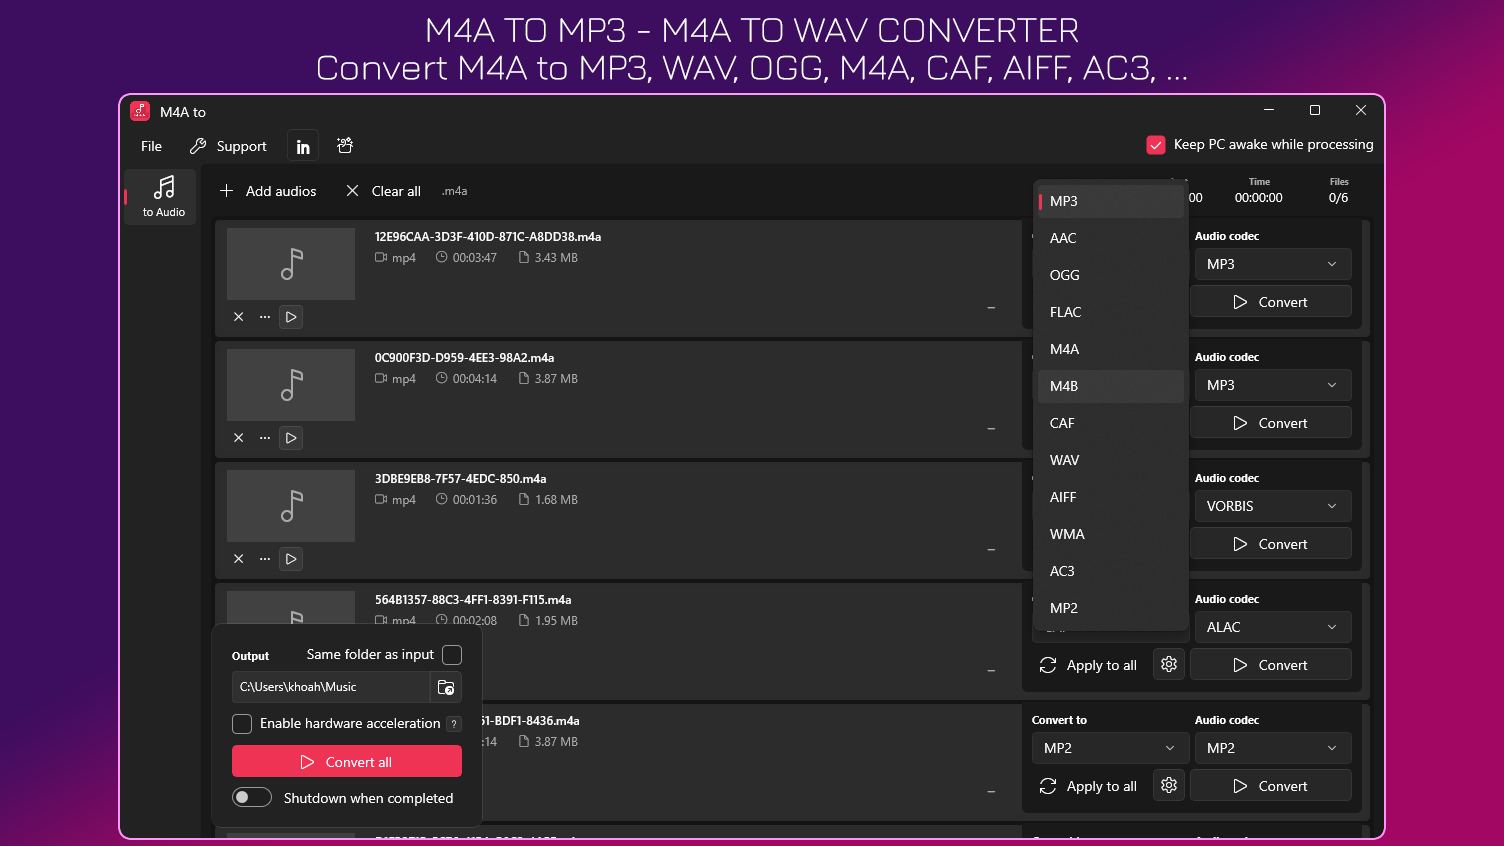 M4A to MP3 - M4A to WAV Converter - Convert M4A to MP3, WAV, OGG, CAF, AIFF, AC3, ...